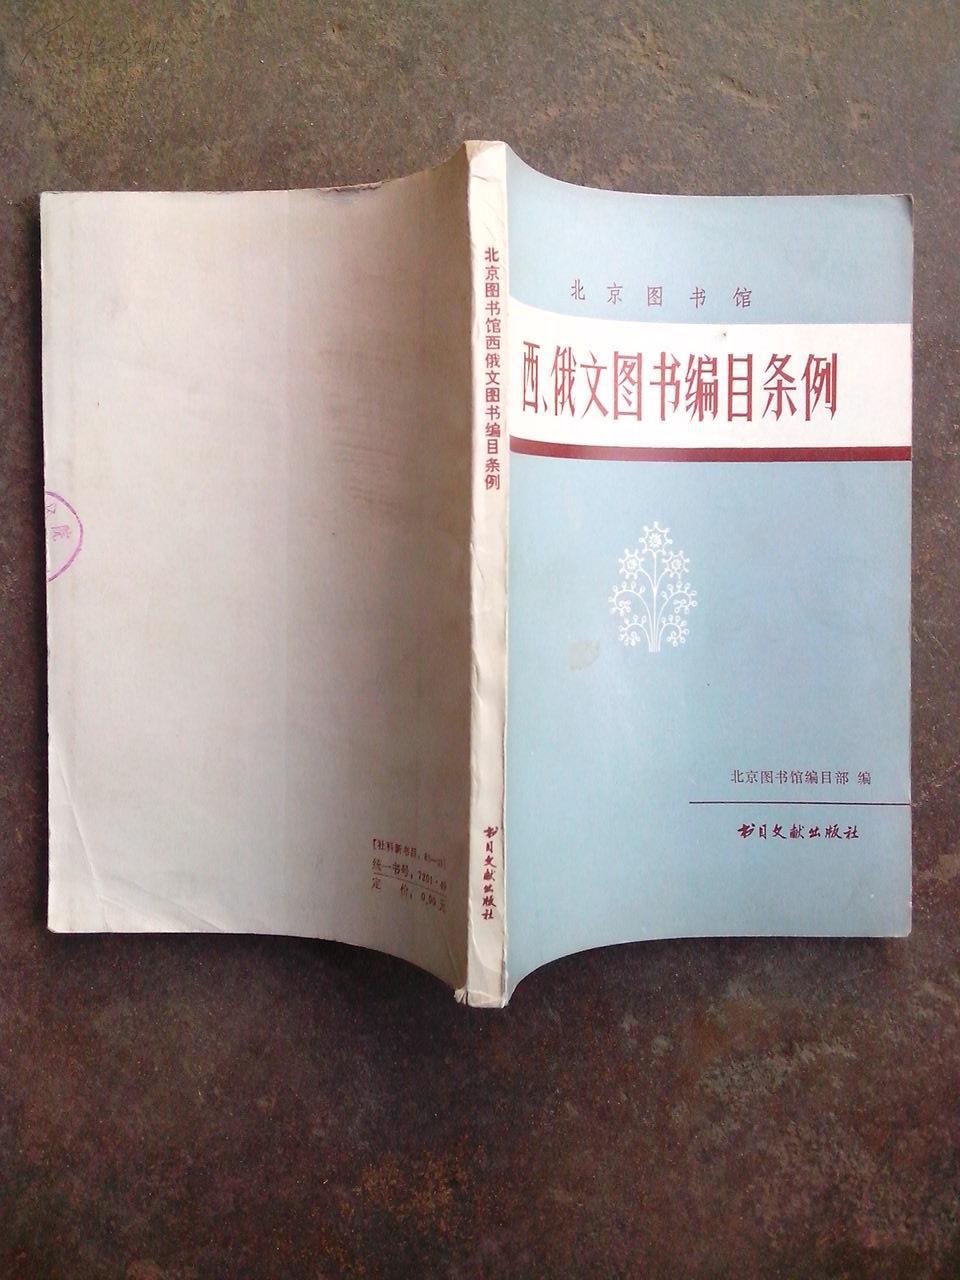 北京图书馆 西、俄文图书编目条例